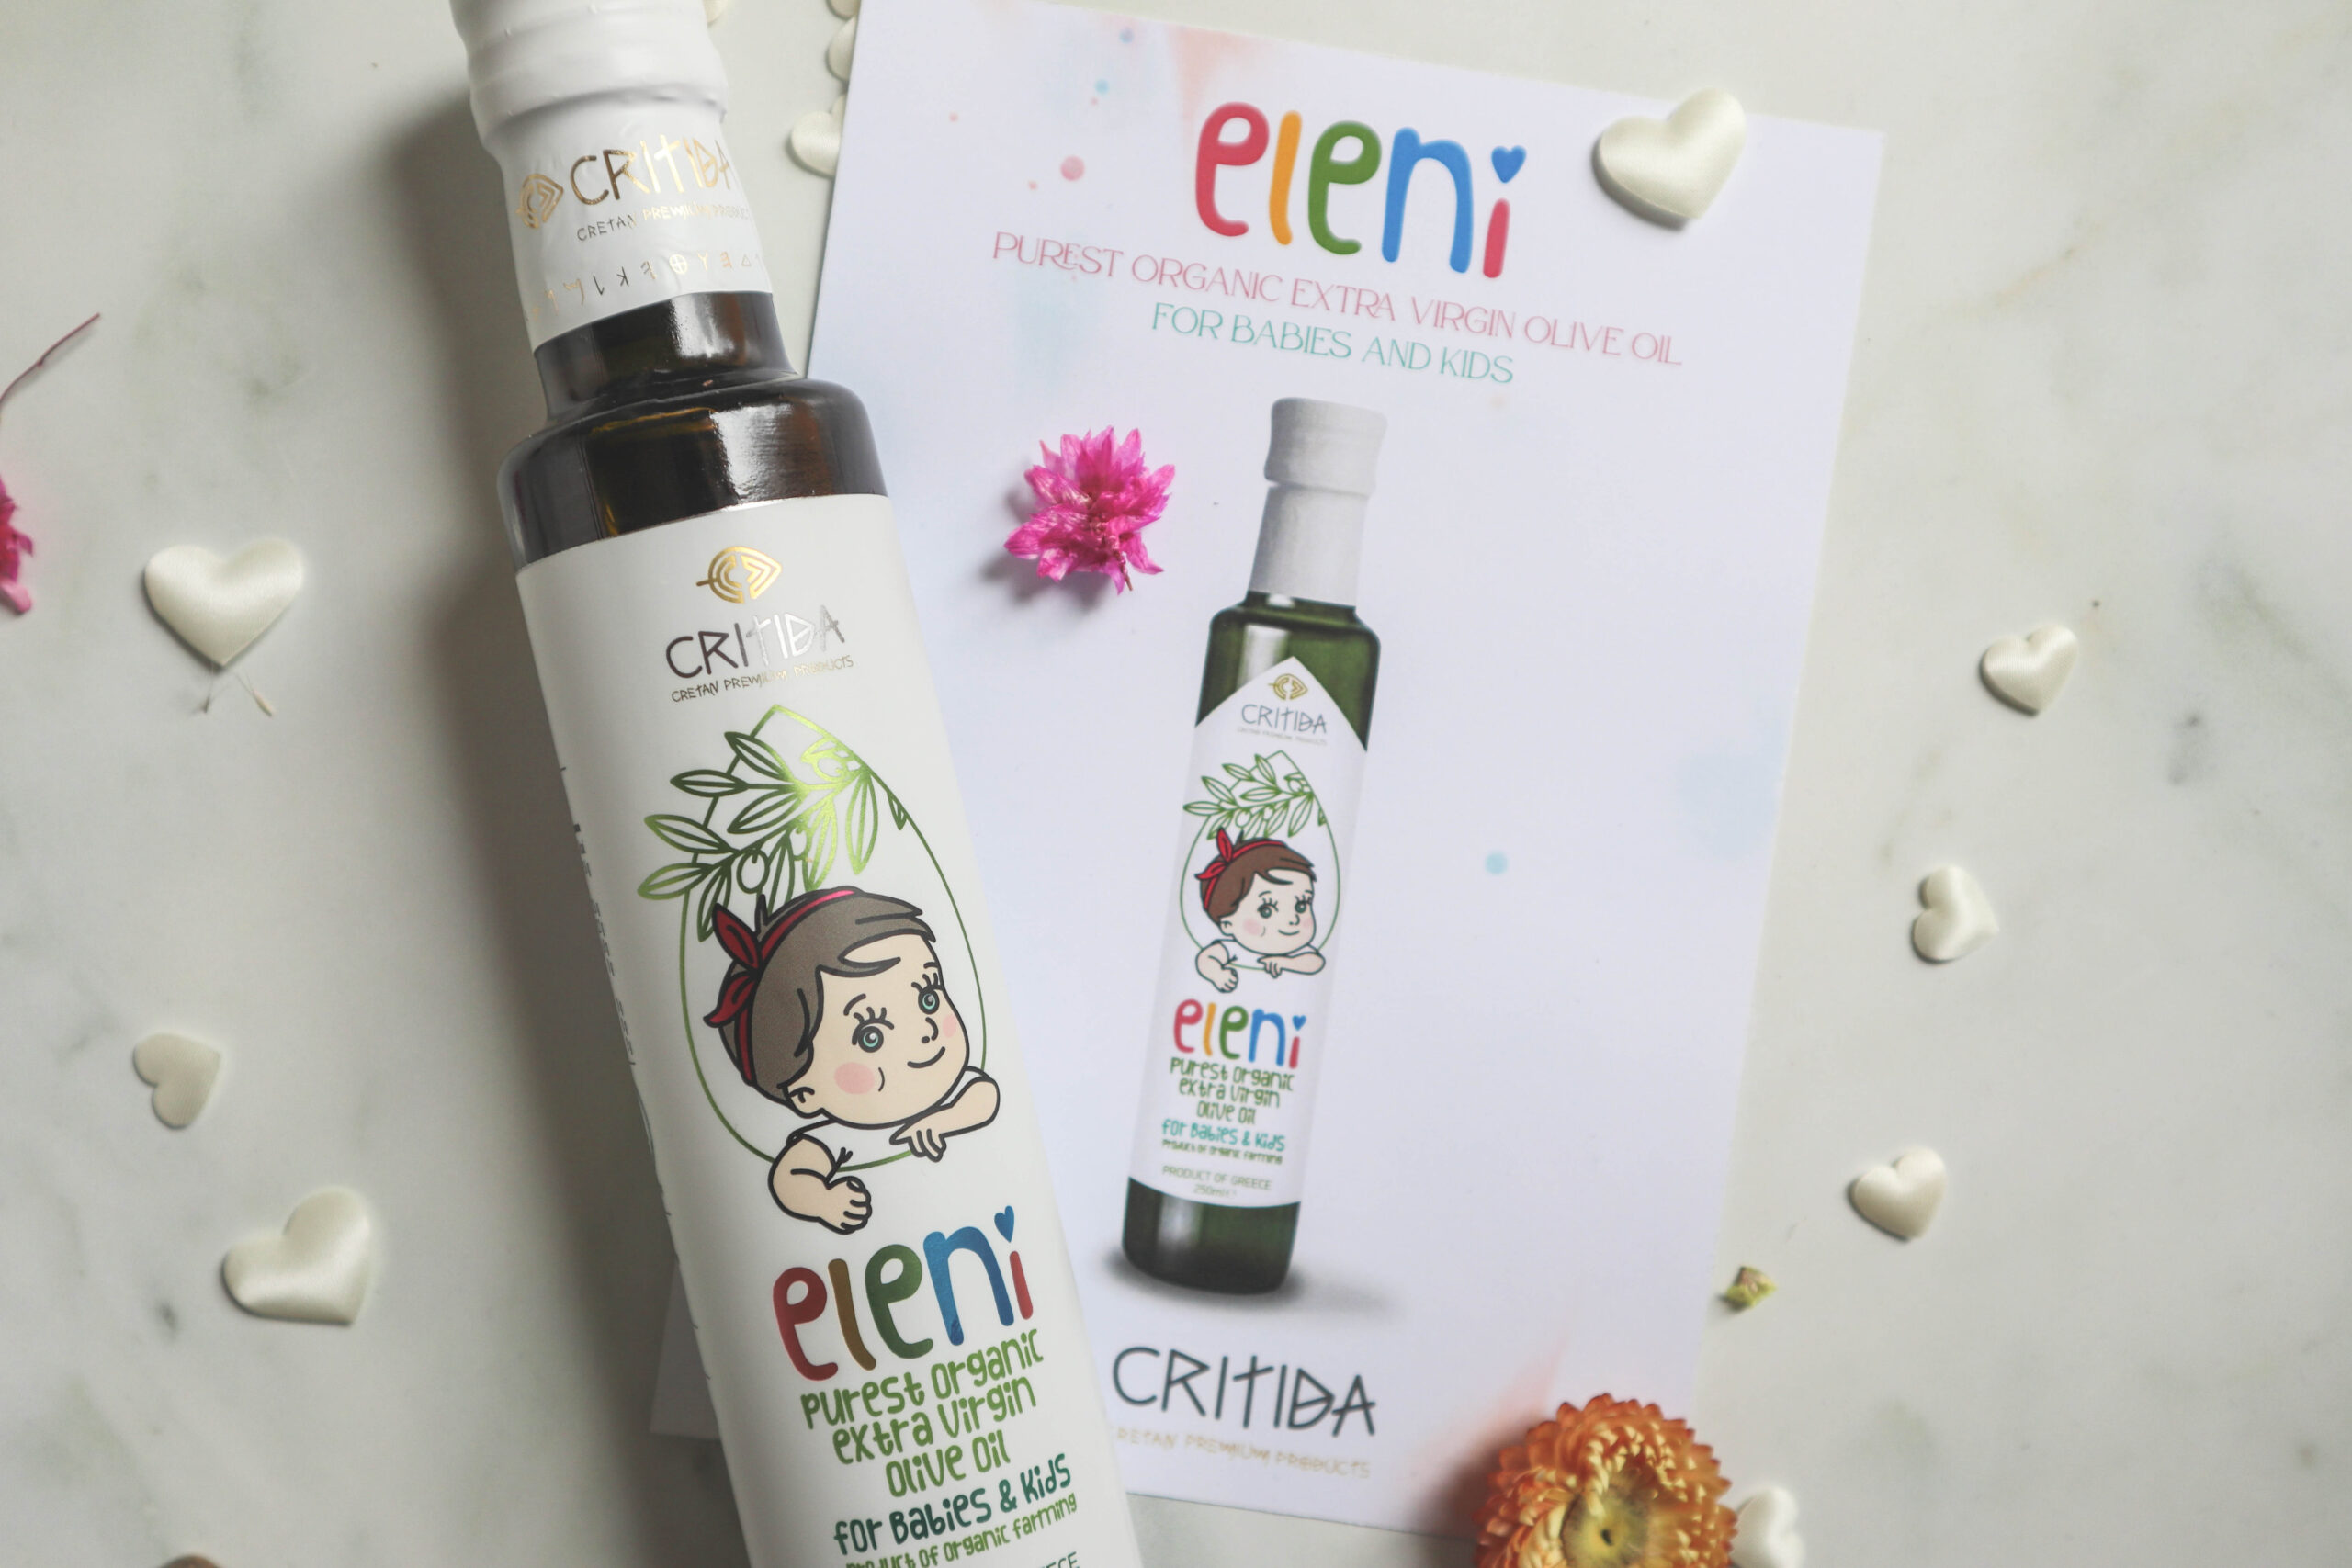 økologisk ekstra virgin olivenolje for babyer og barn fra Kreta